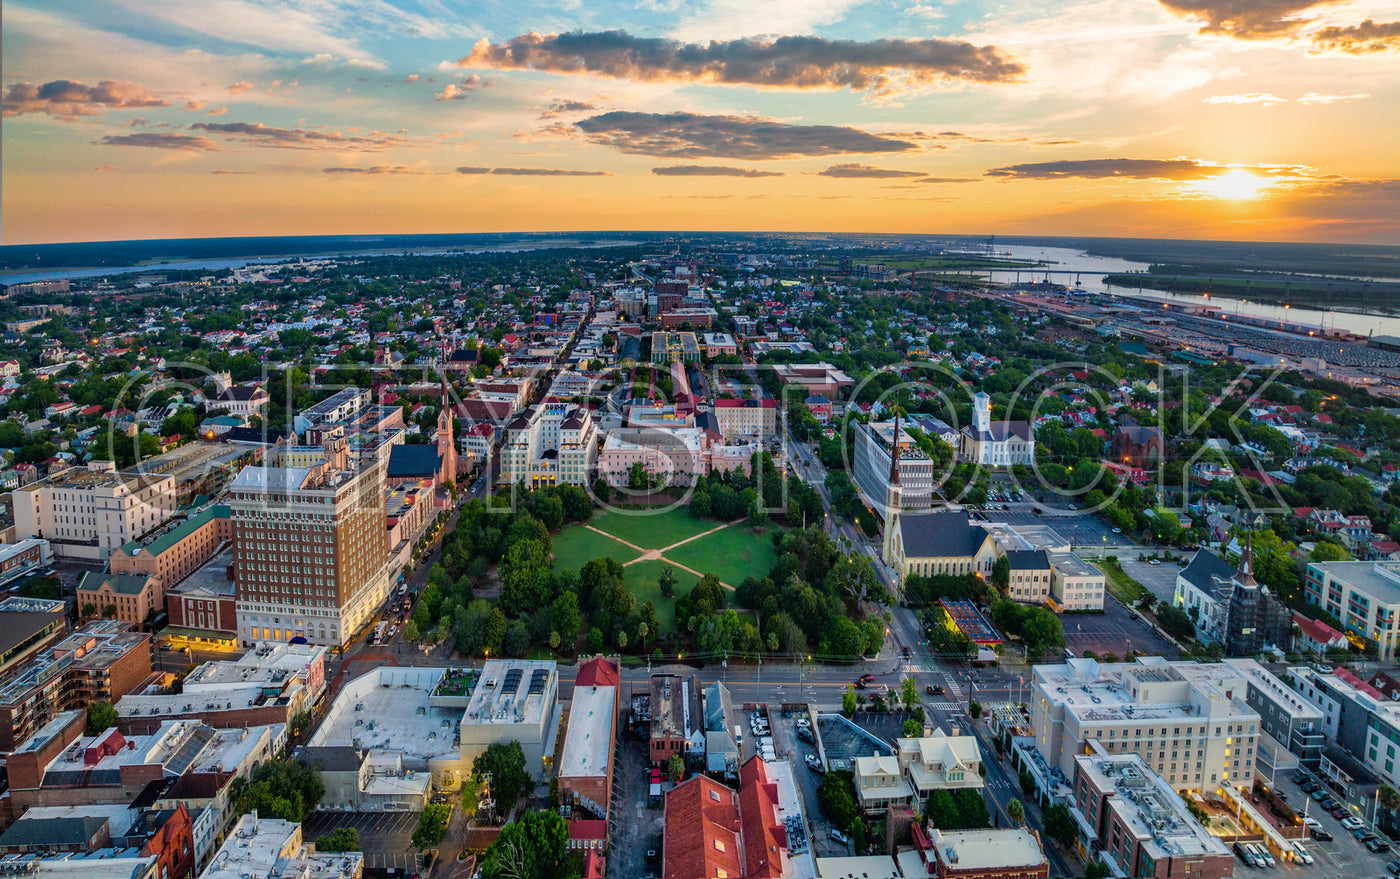 Aerial view of Charleston, South Carolina at sunset